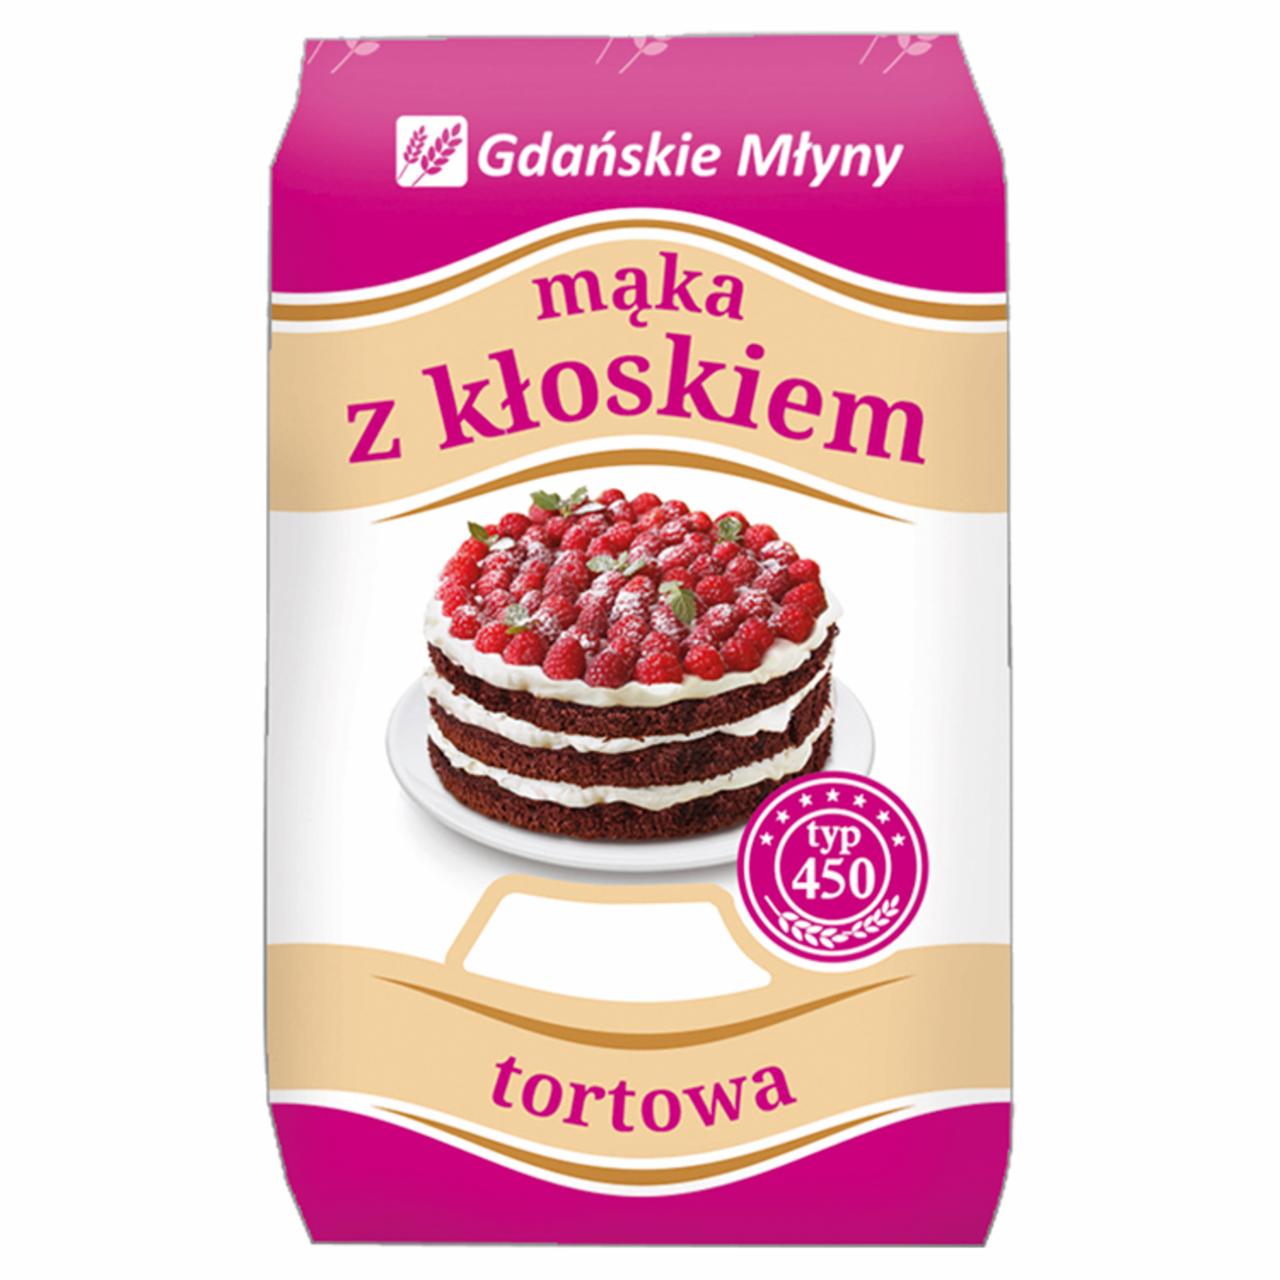 Zdjęcia - Gdańskie Młyny Mąka z kłoskiem Mąka pszenna tortowa typ 450 1 kg